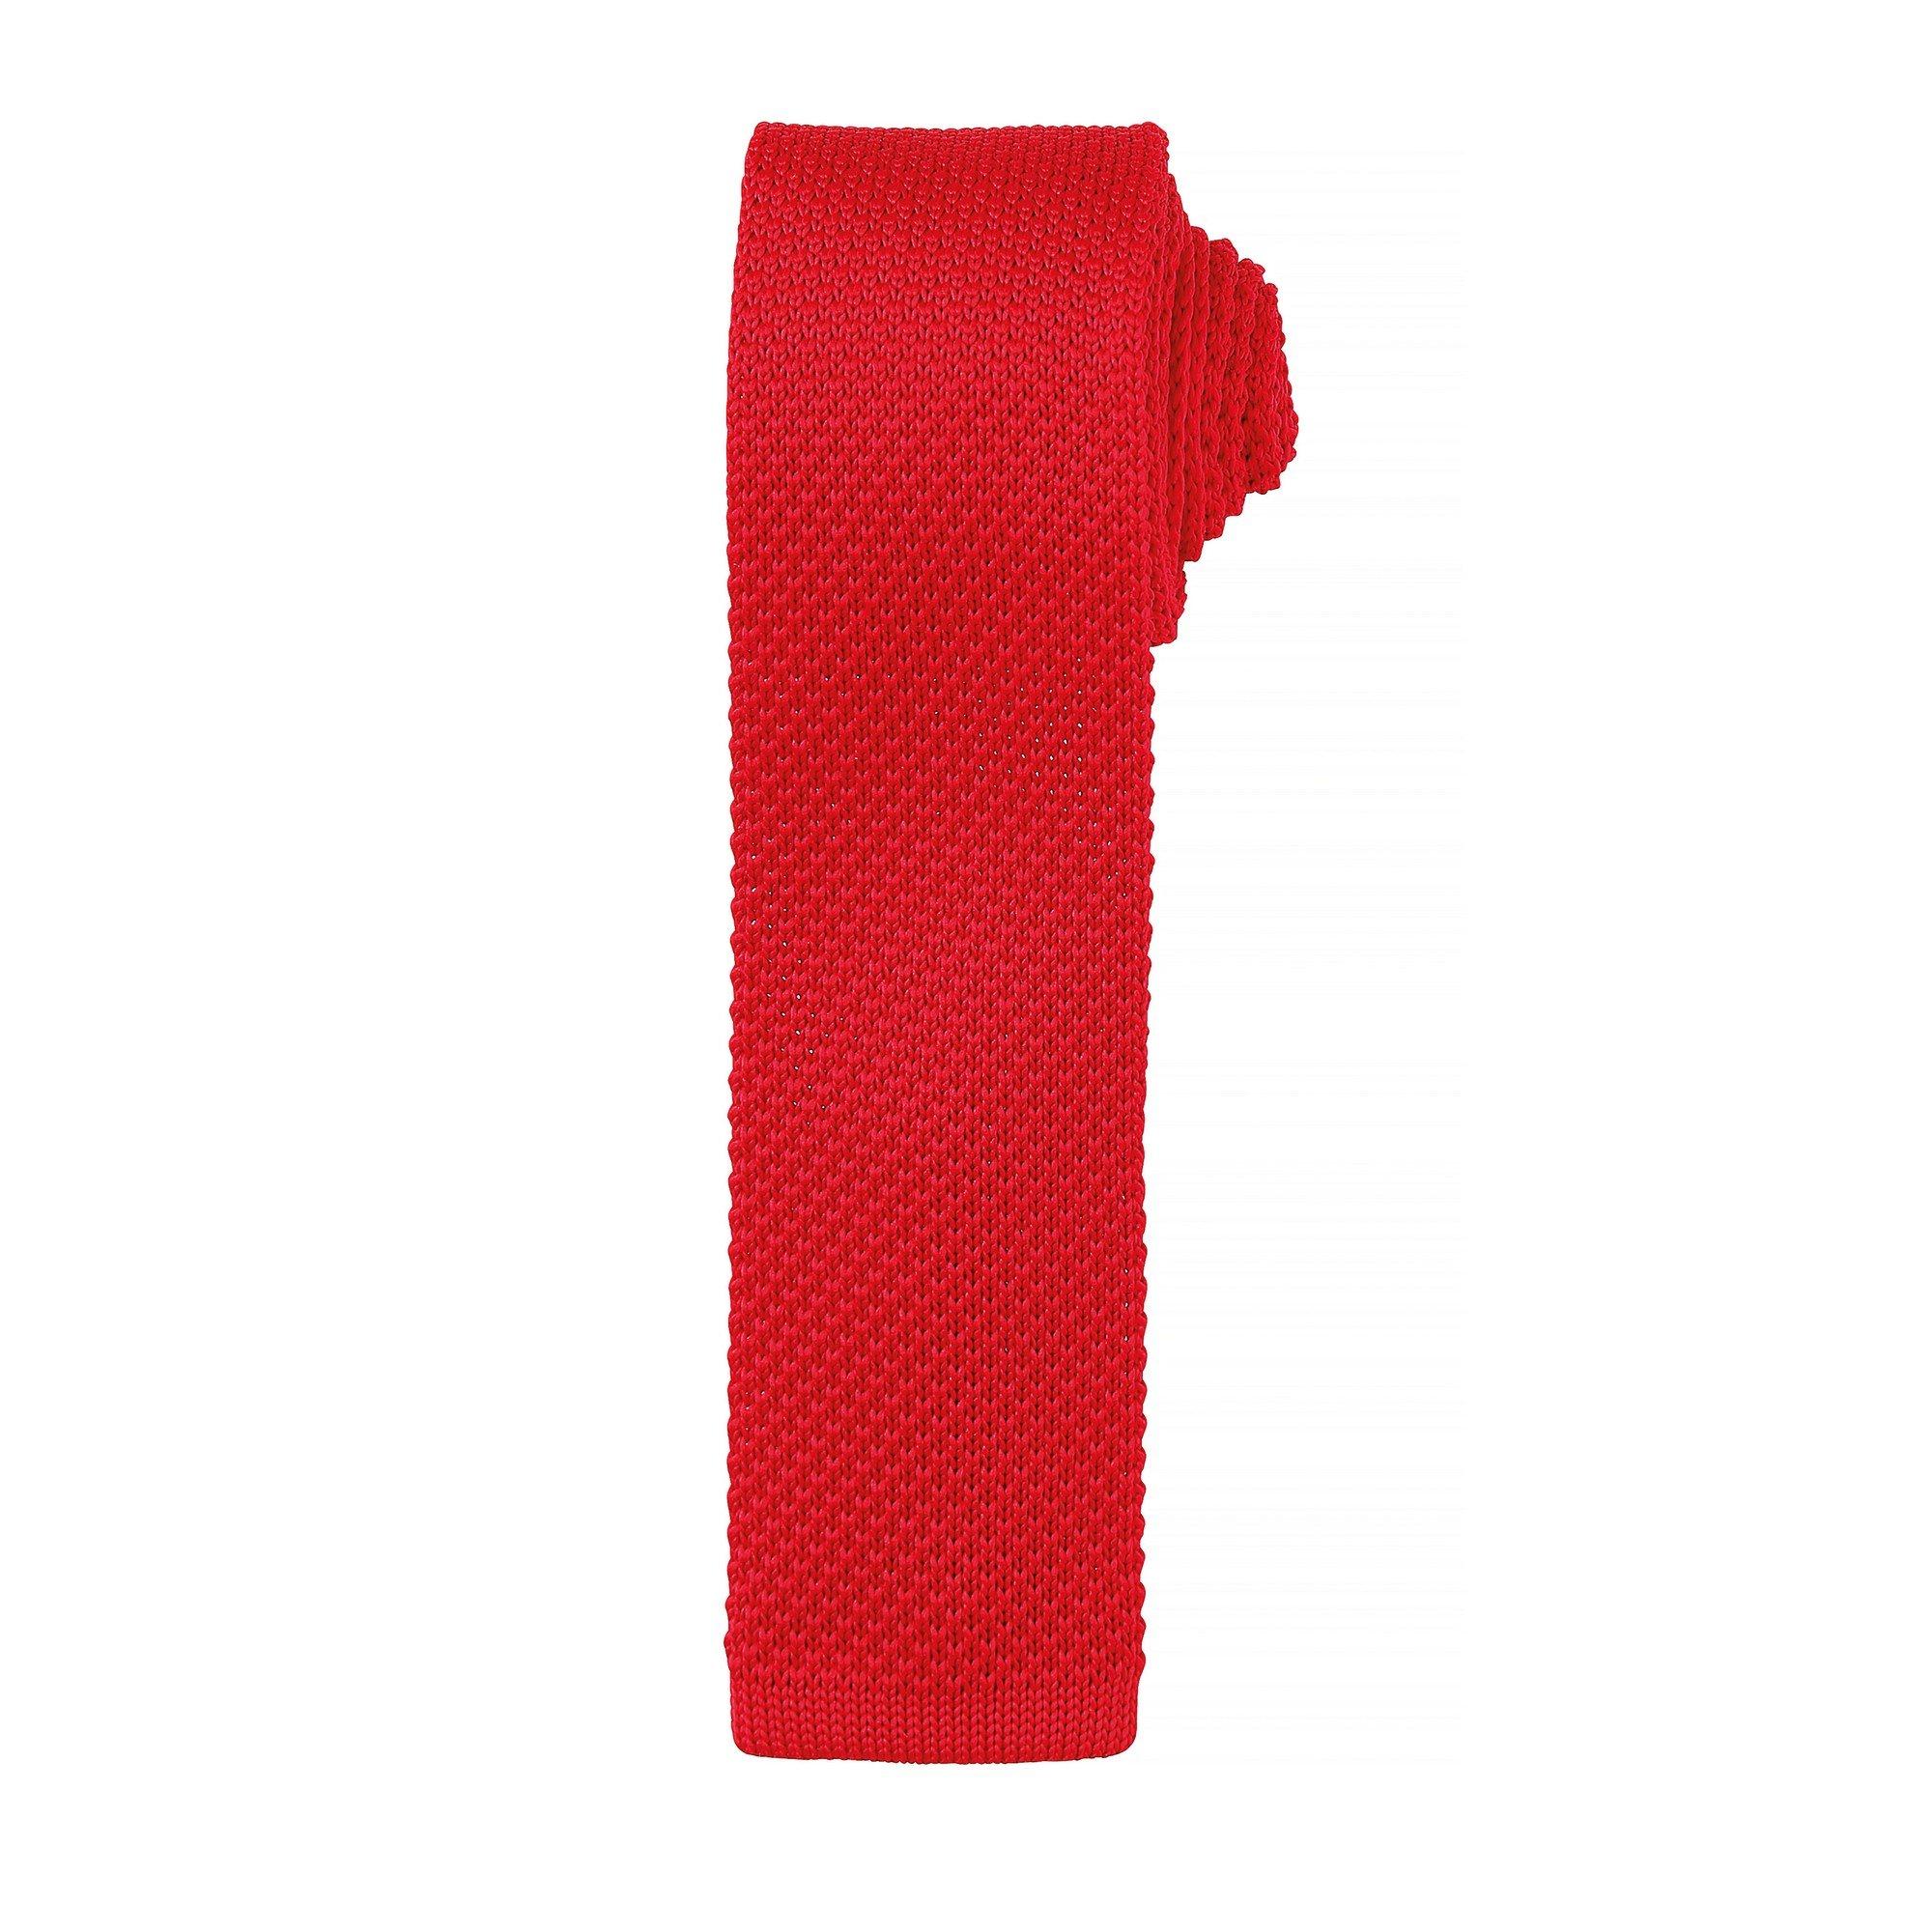 PREMIER  Krawatte mit Strick Muster (2 StückPackung) 